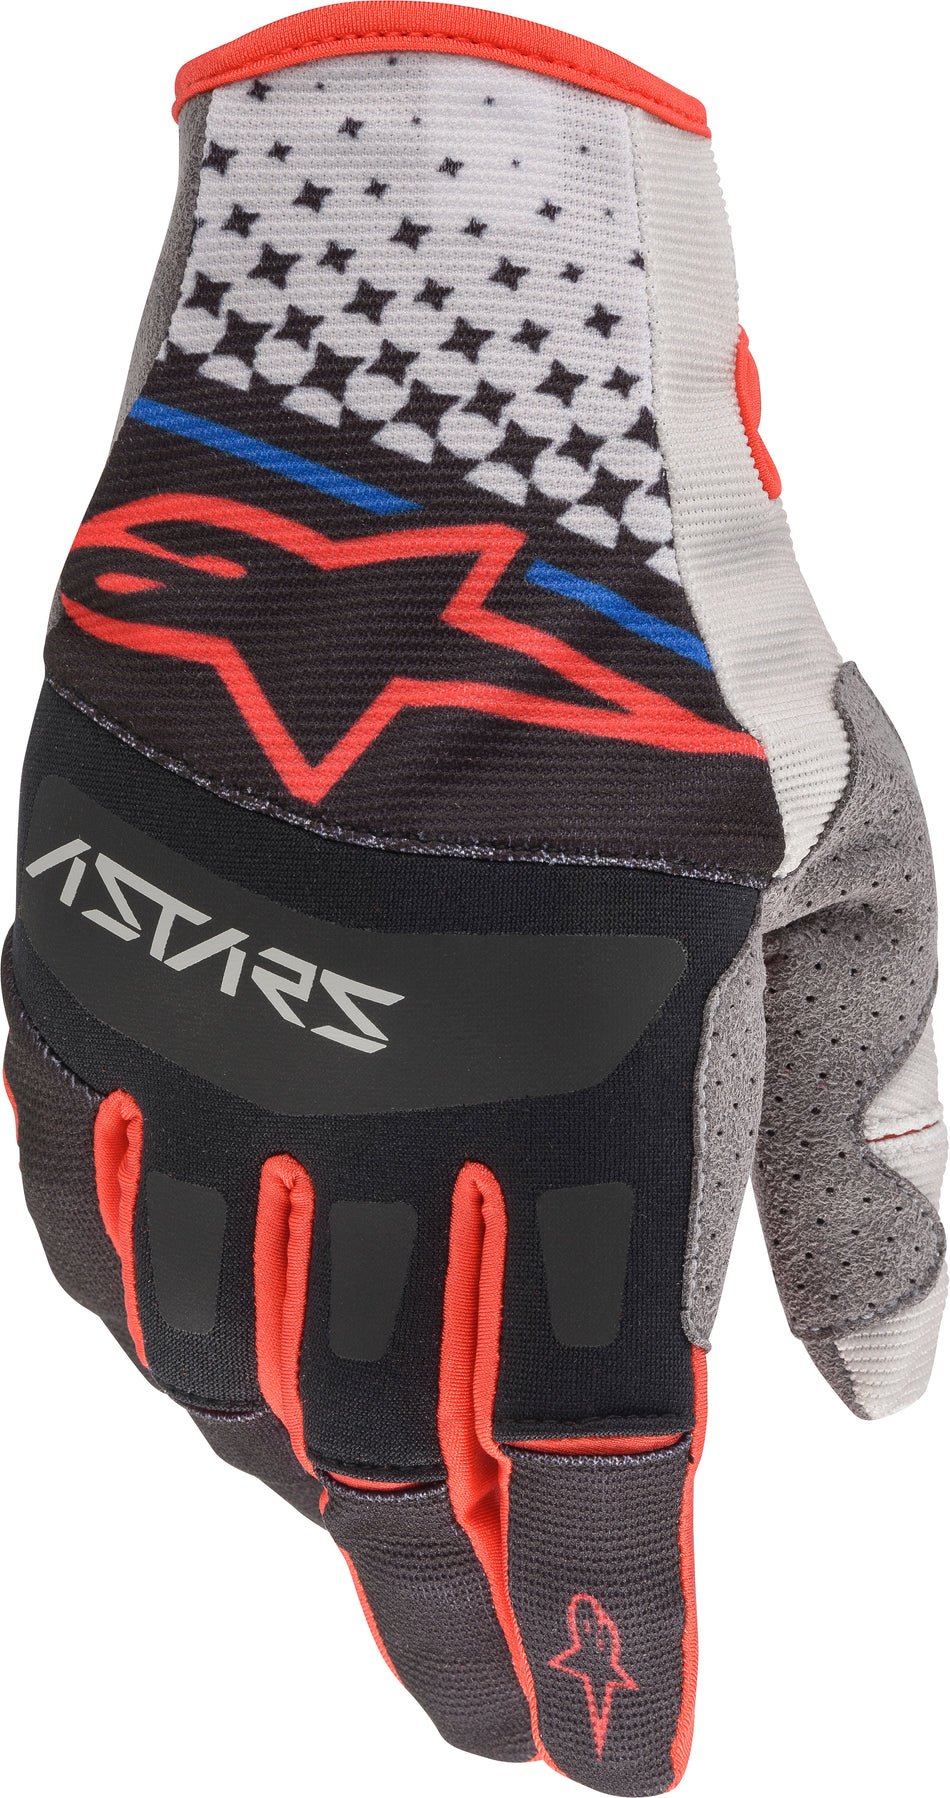 ALPINESTARS Techstar Gloves Grey/Black/Red Md 3561020-9231-M